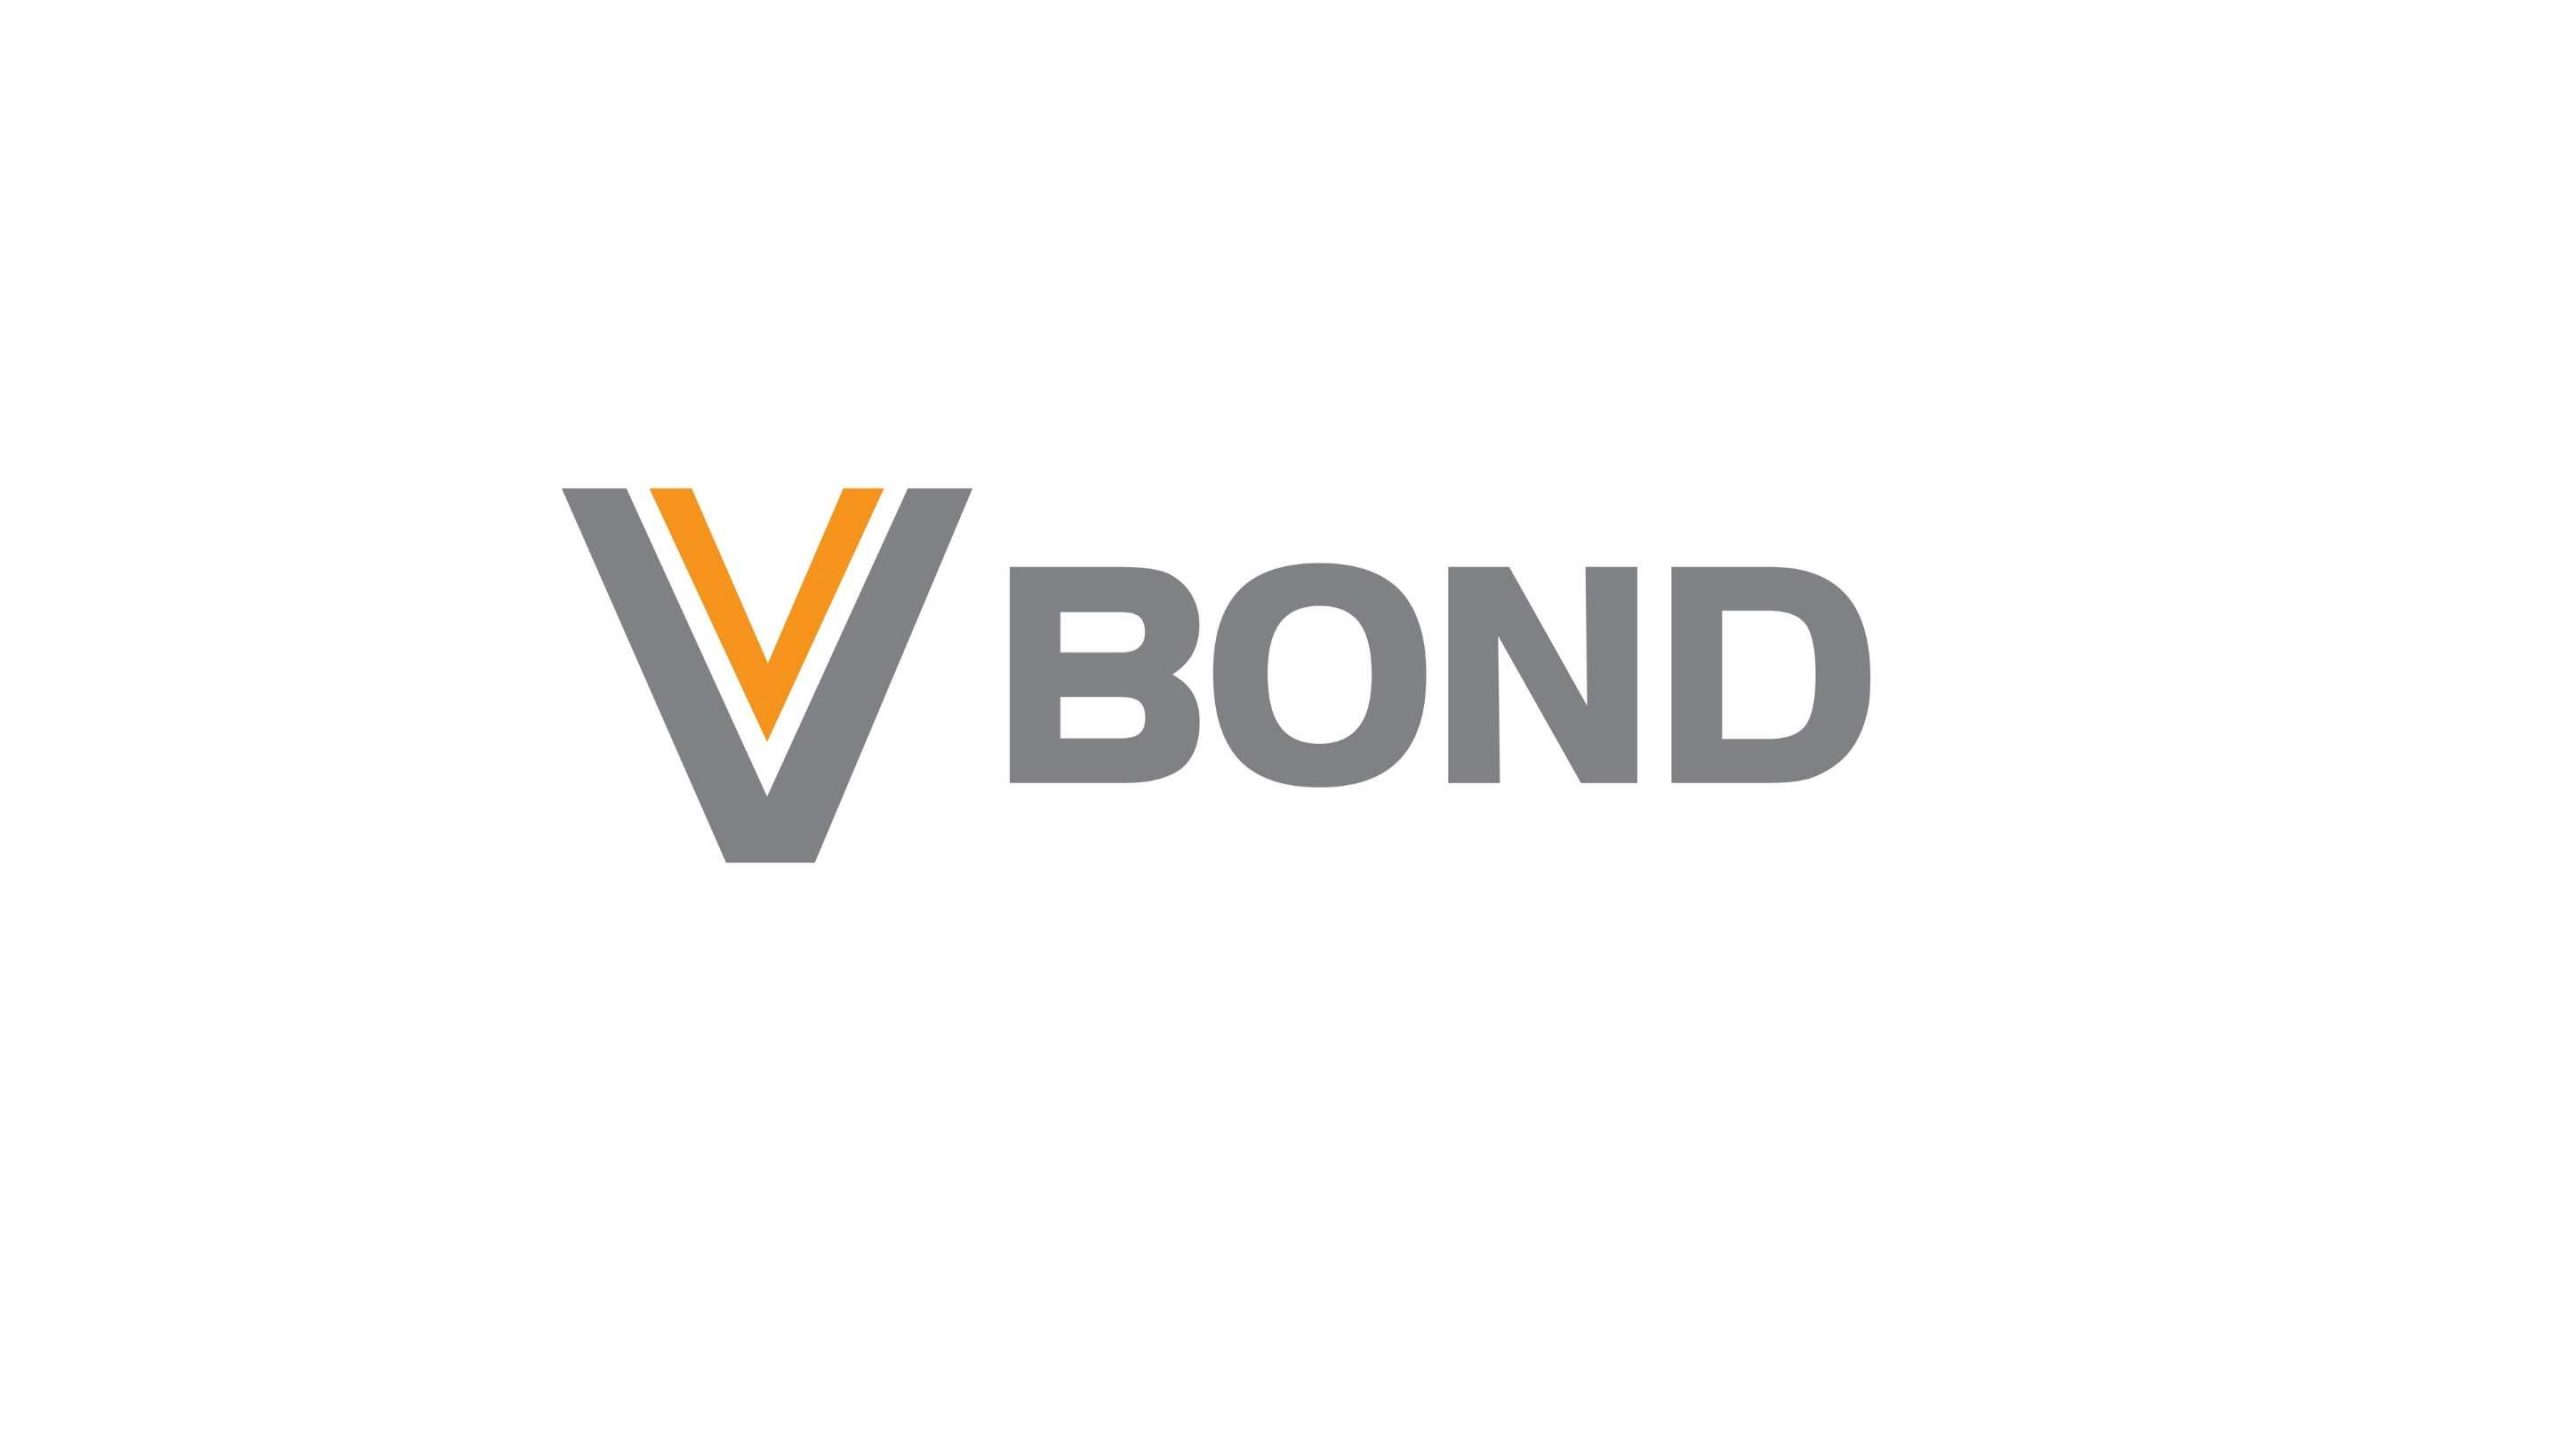 Trái phiếu VBond là gì?
